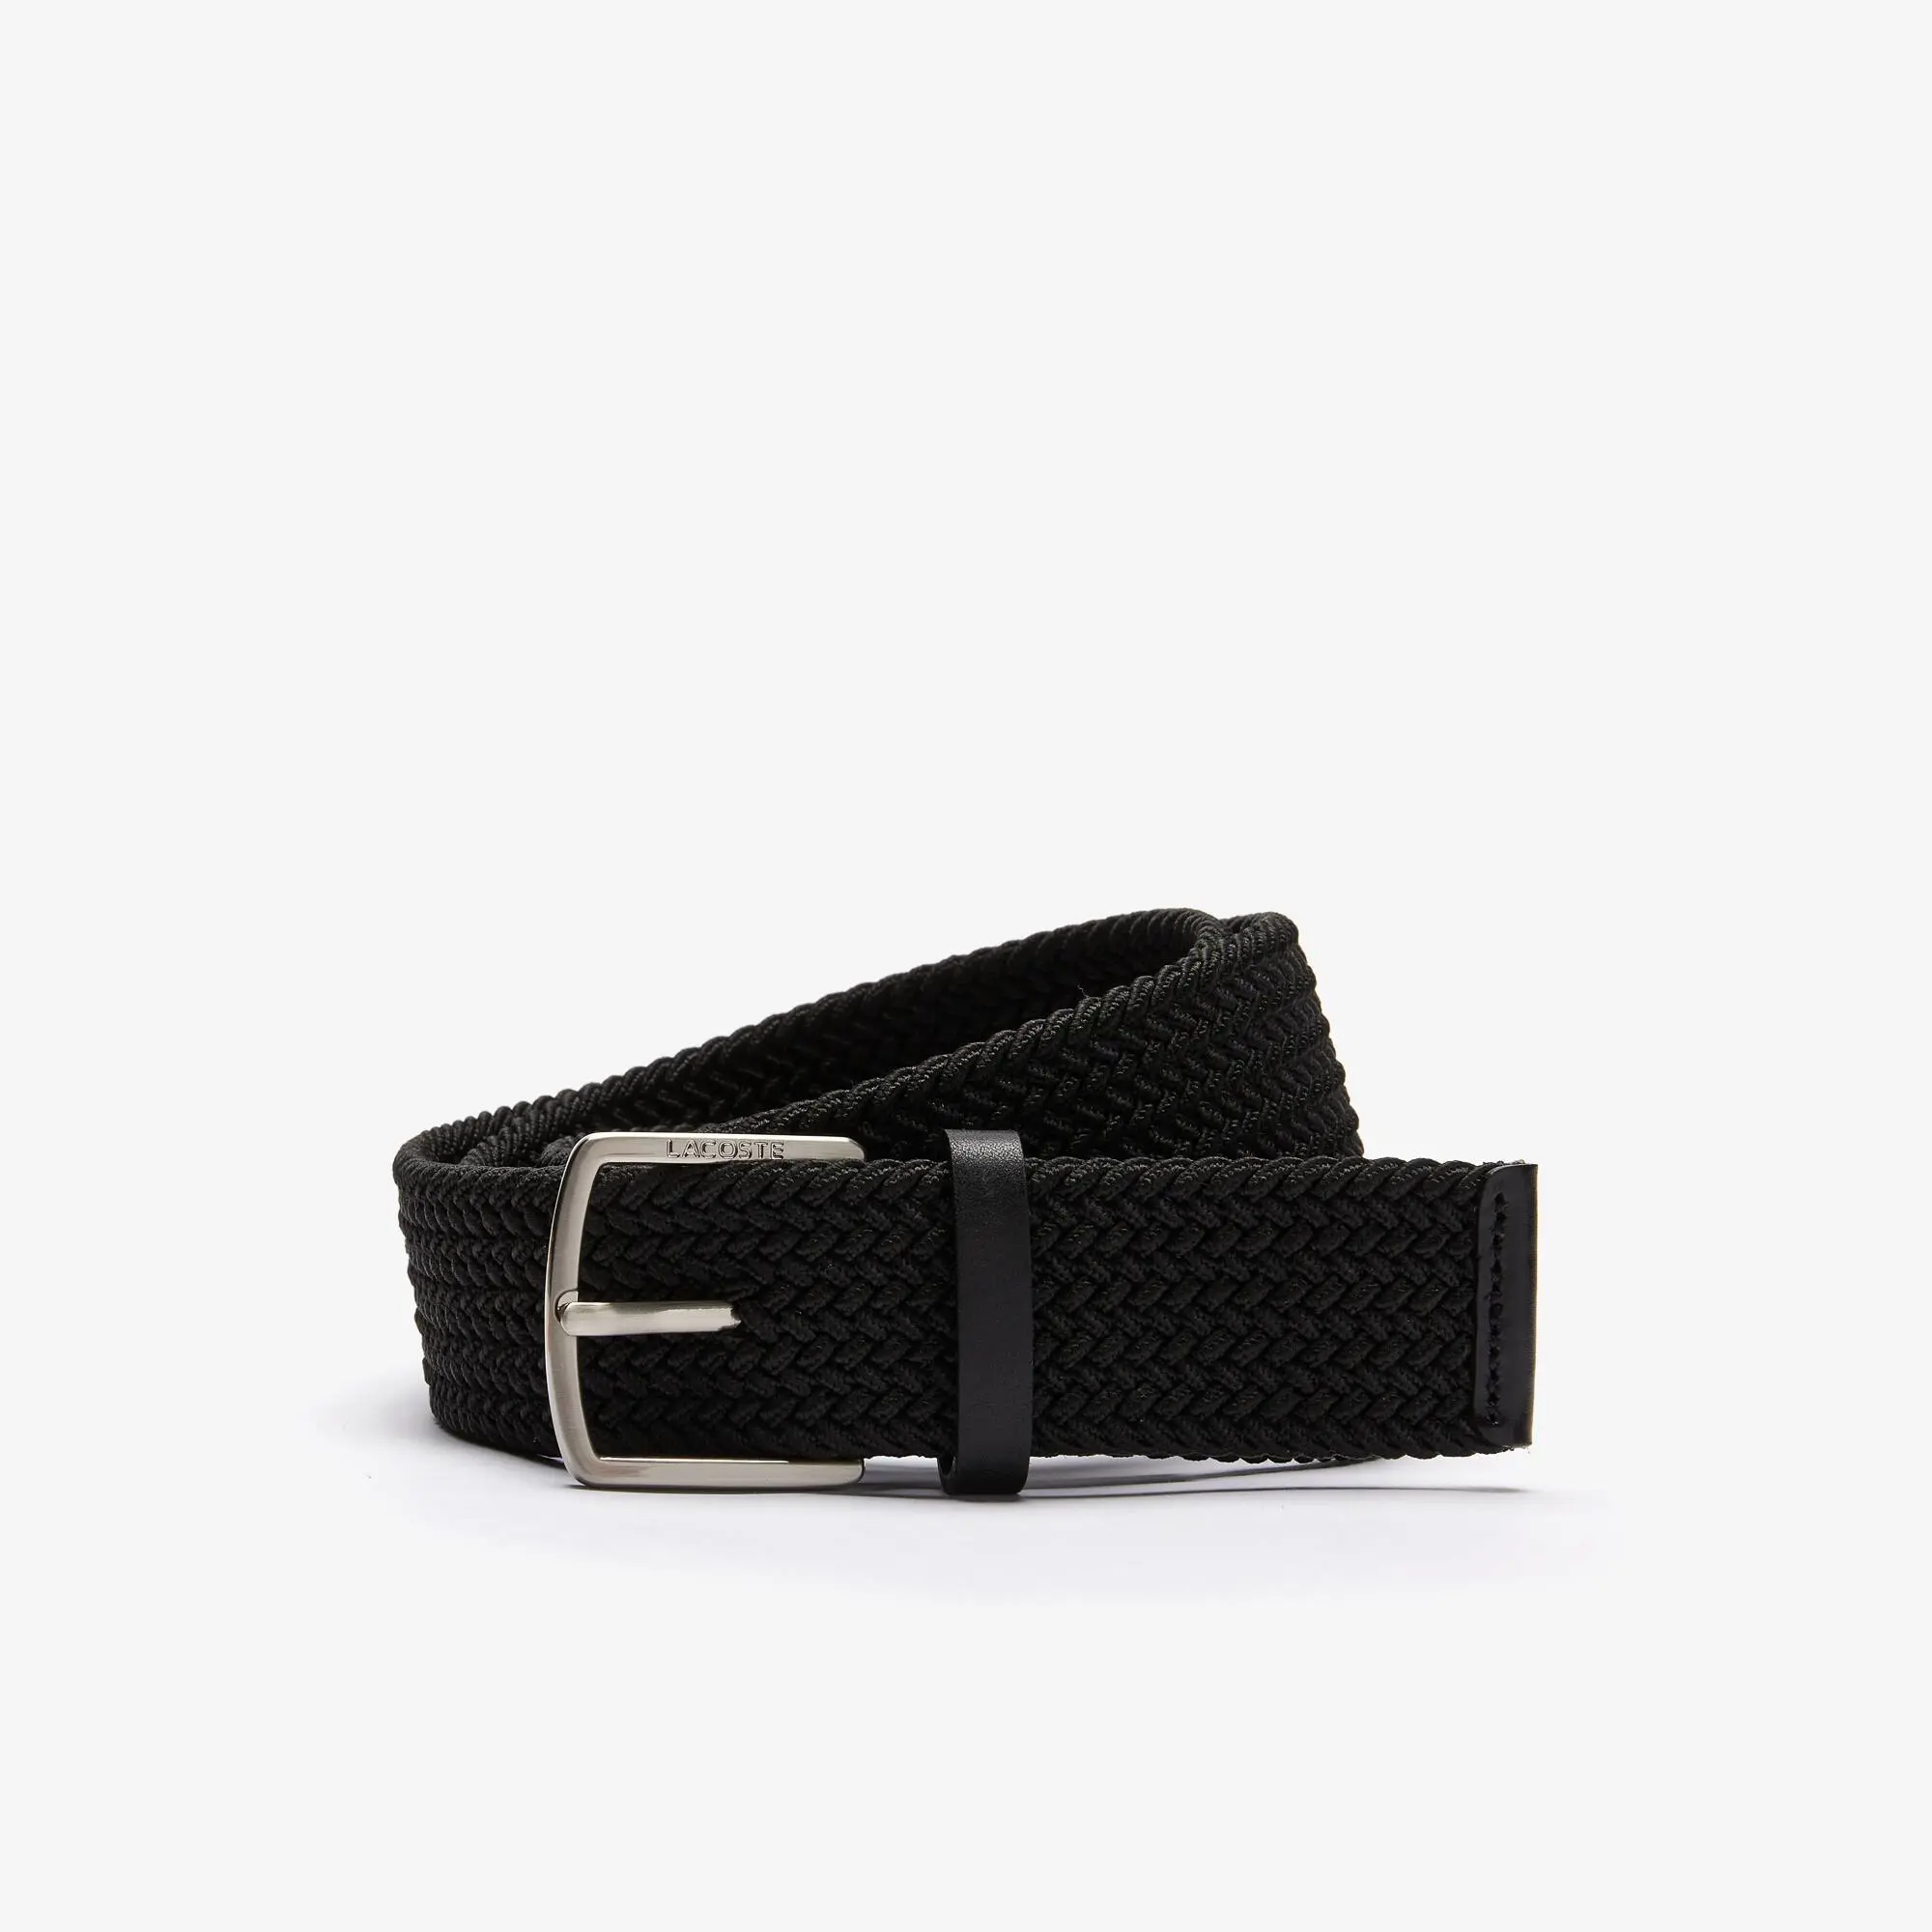 Lacoste Cintura da uomo in maglia elasticizzata con fibbia con incisione Lacoste. 1